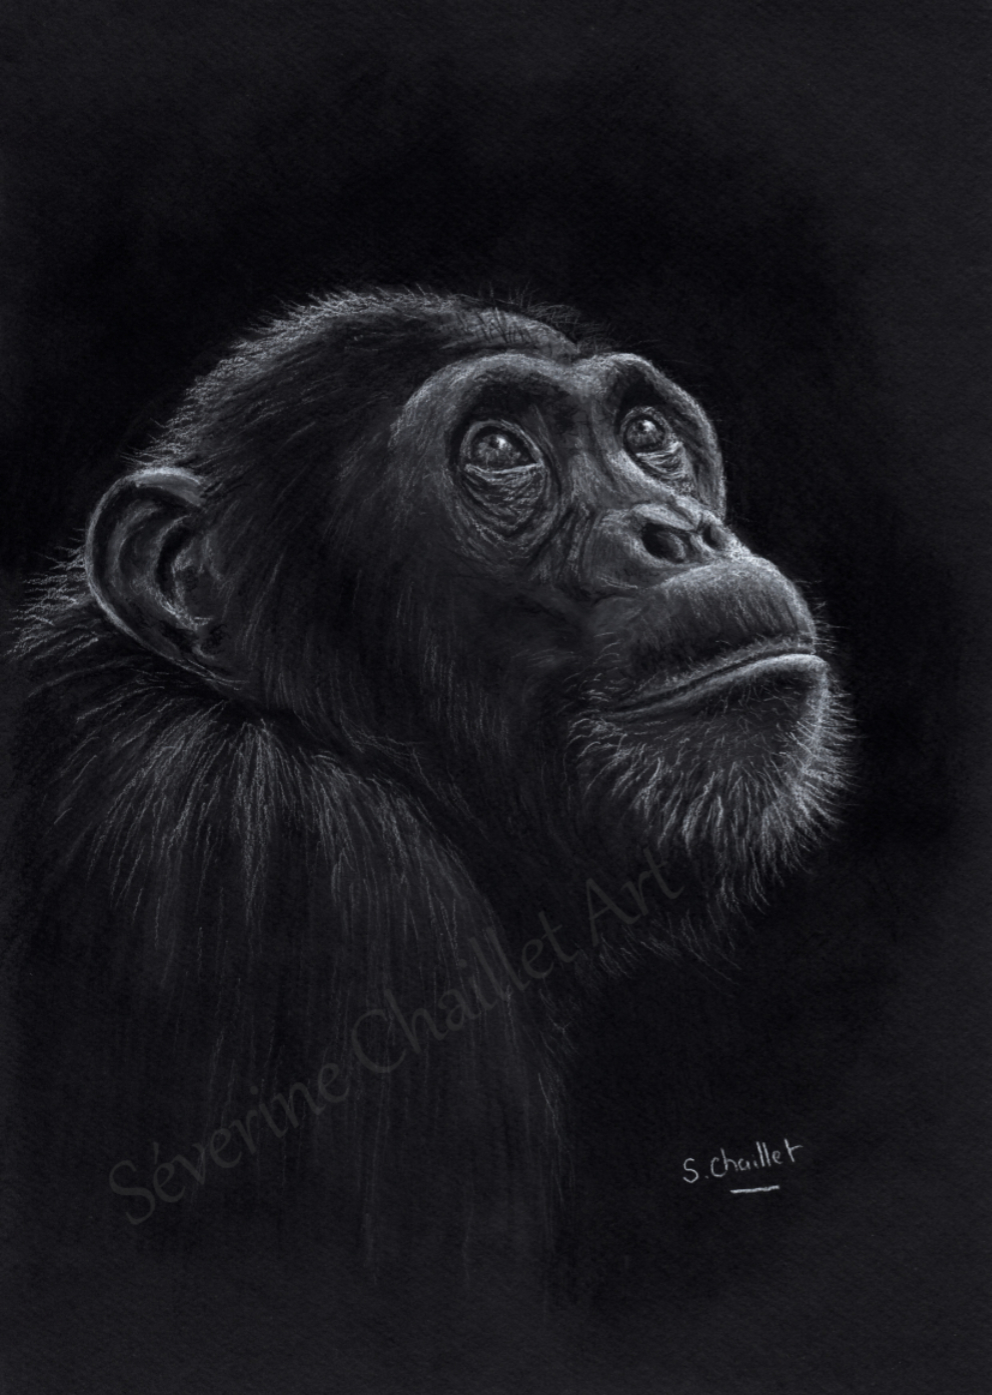 Portrait d'un chimpanzé rêveur